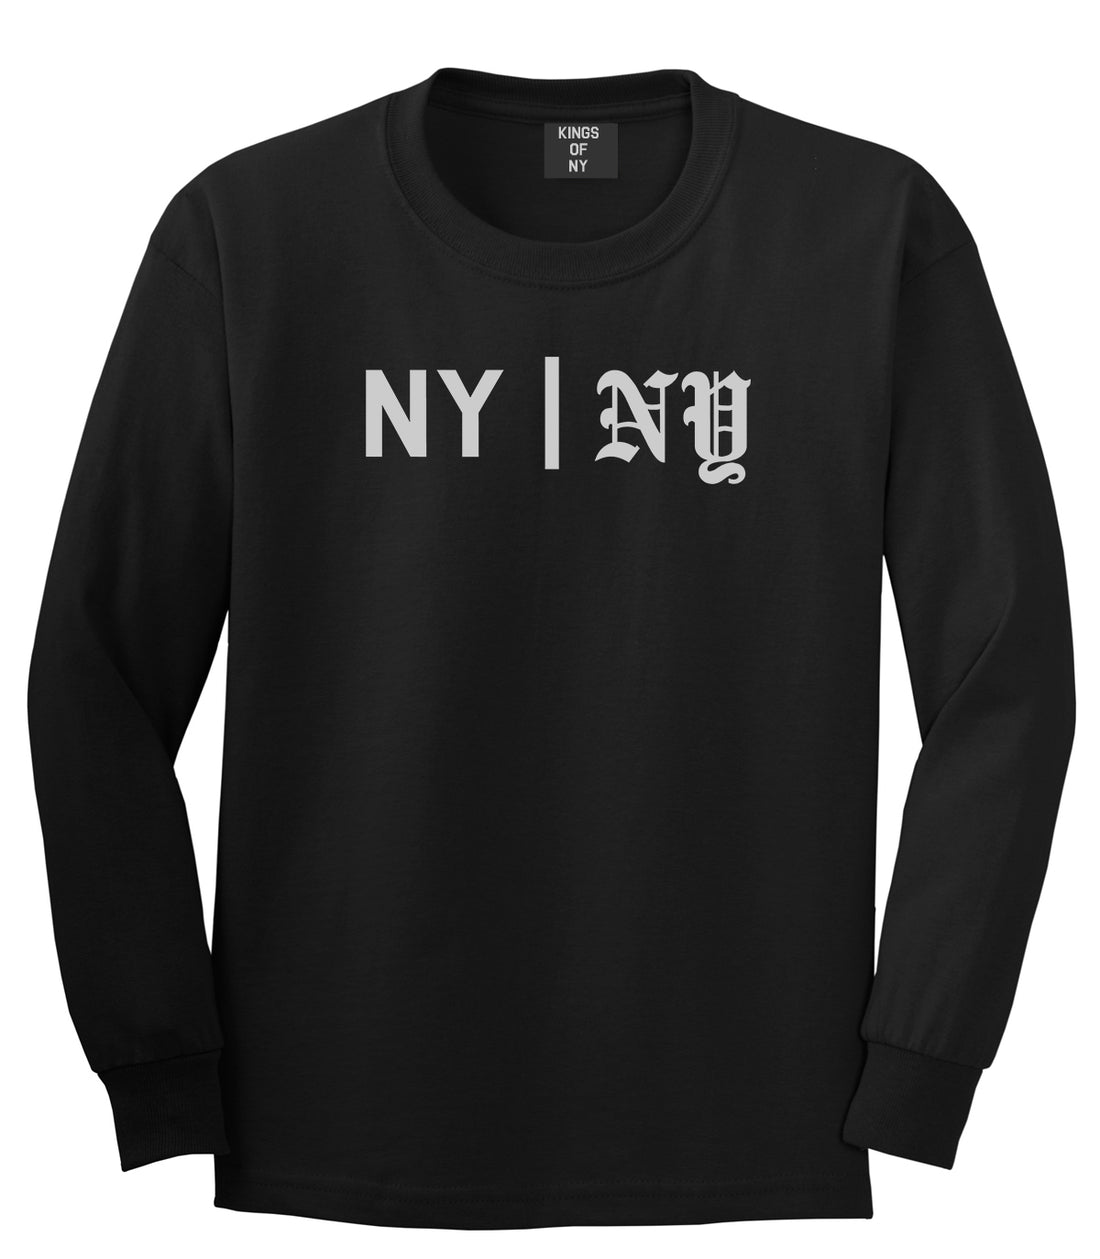 NY vs NY Mens Long Sleeve T-Shirt Black